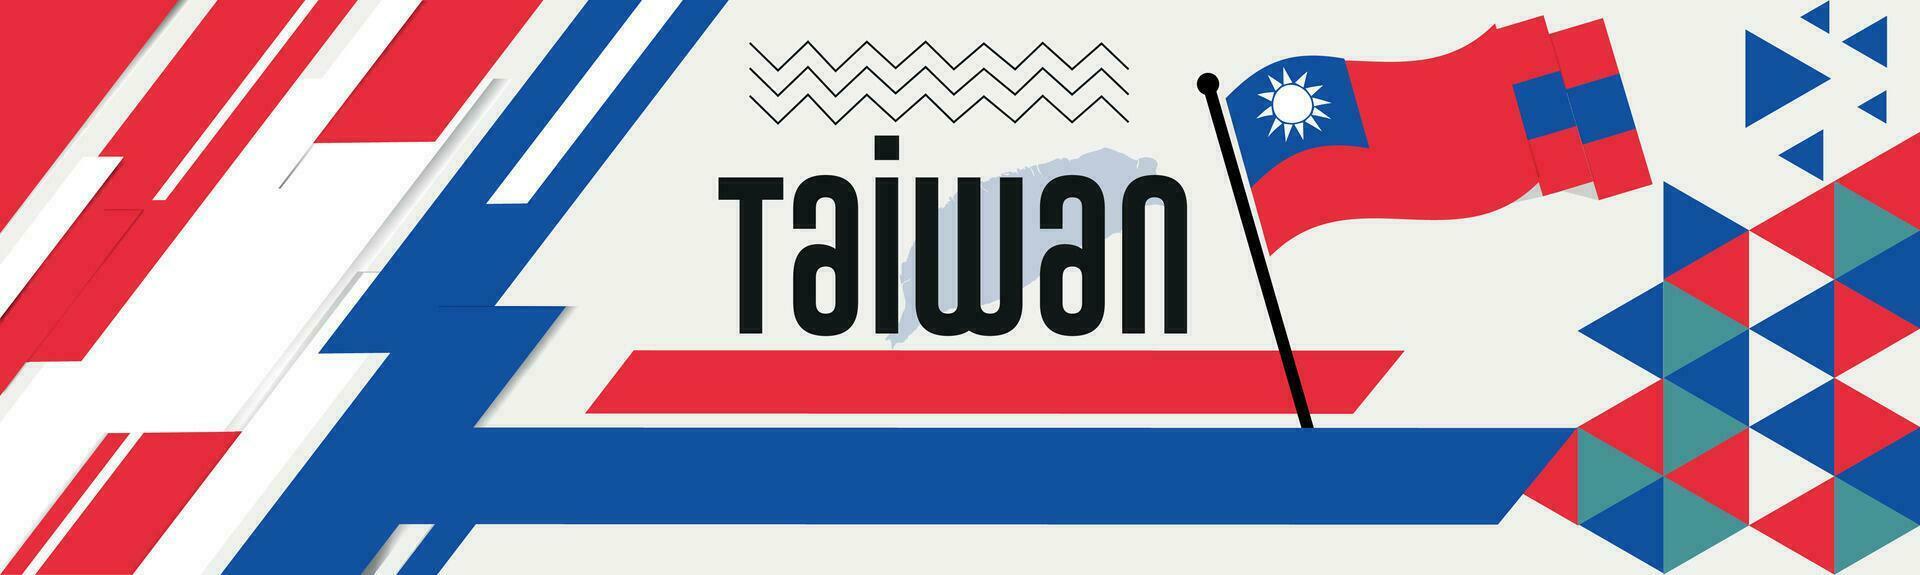 Taiwan National Tag Banner mit Karte, Flagge Farben Thema Hintergrund und geometrisch abstrakt retro modern rot Blau Design. abstrakt modern Design. vektor